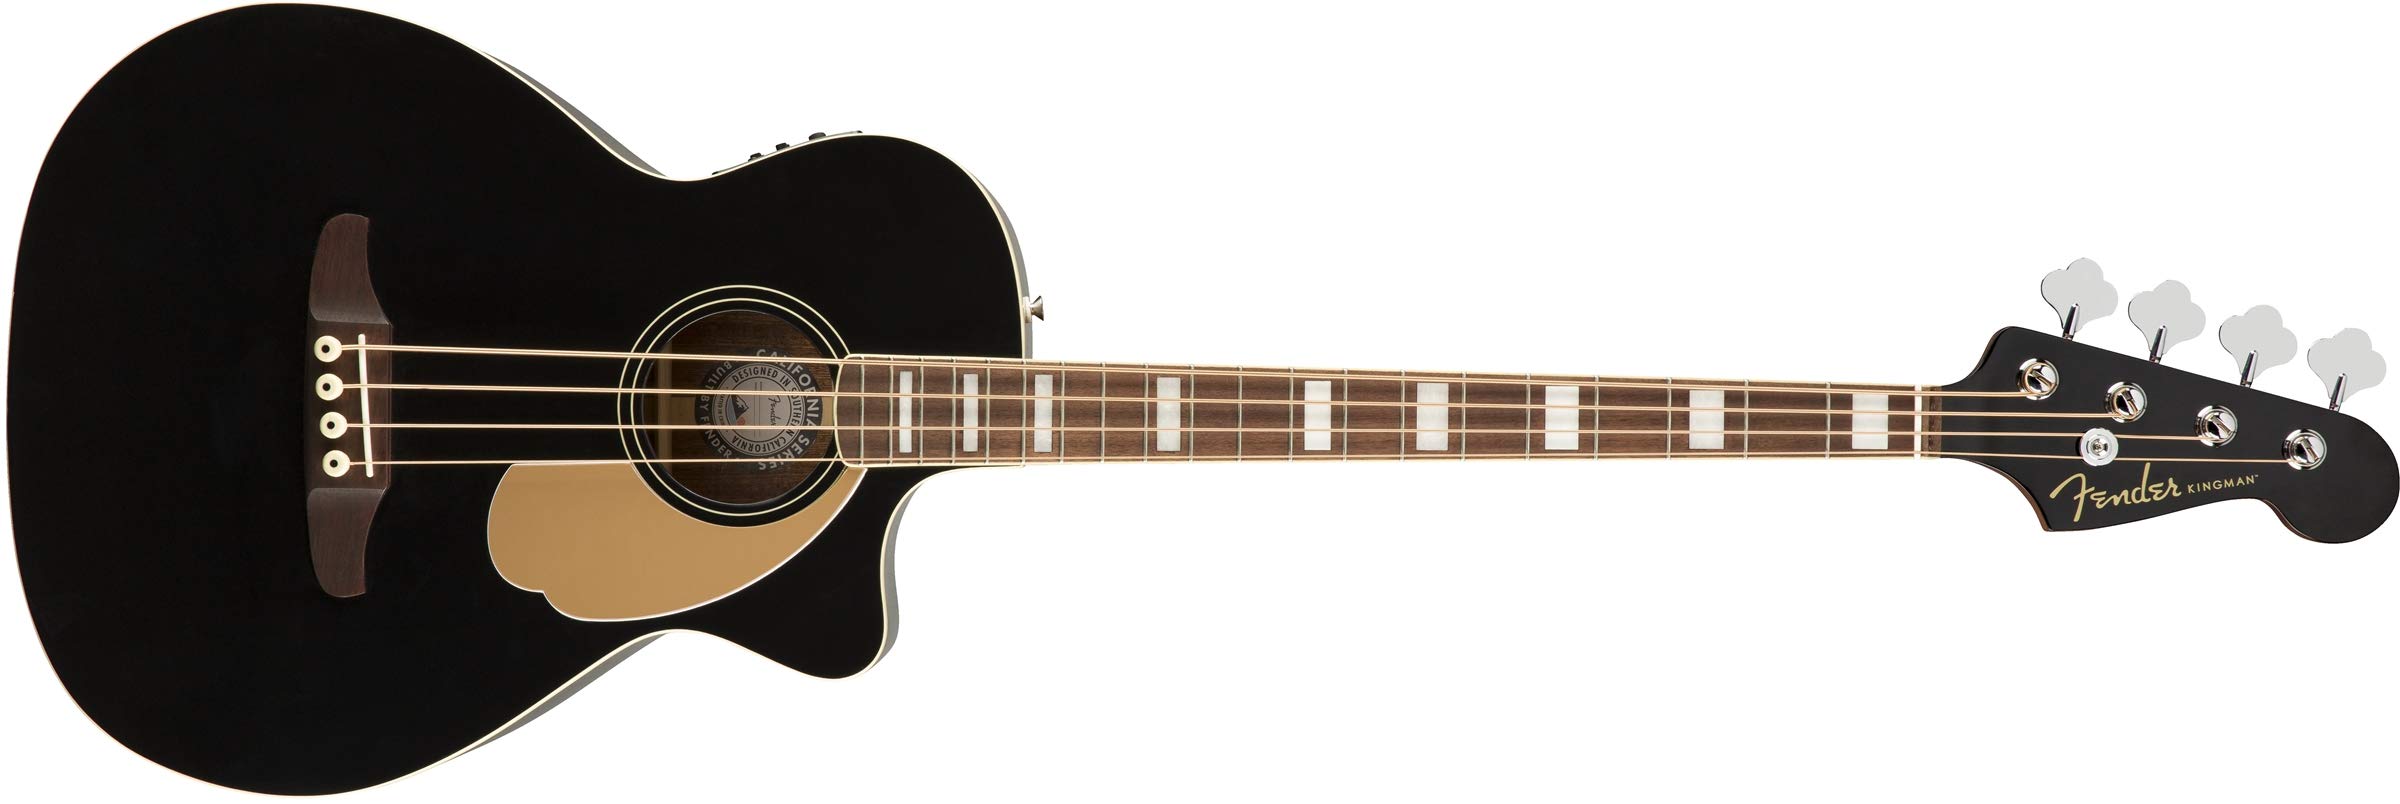 Fender Baixo acústico Kingman (V2) - preto - com bolsa - escala de nogueira